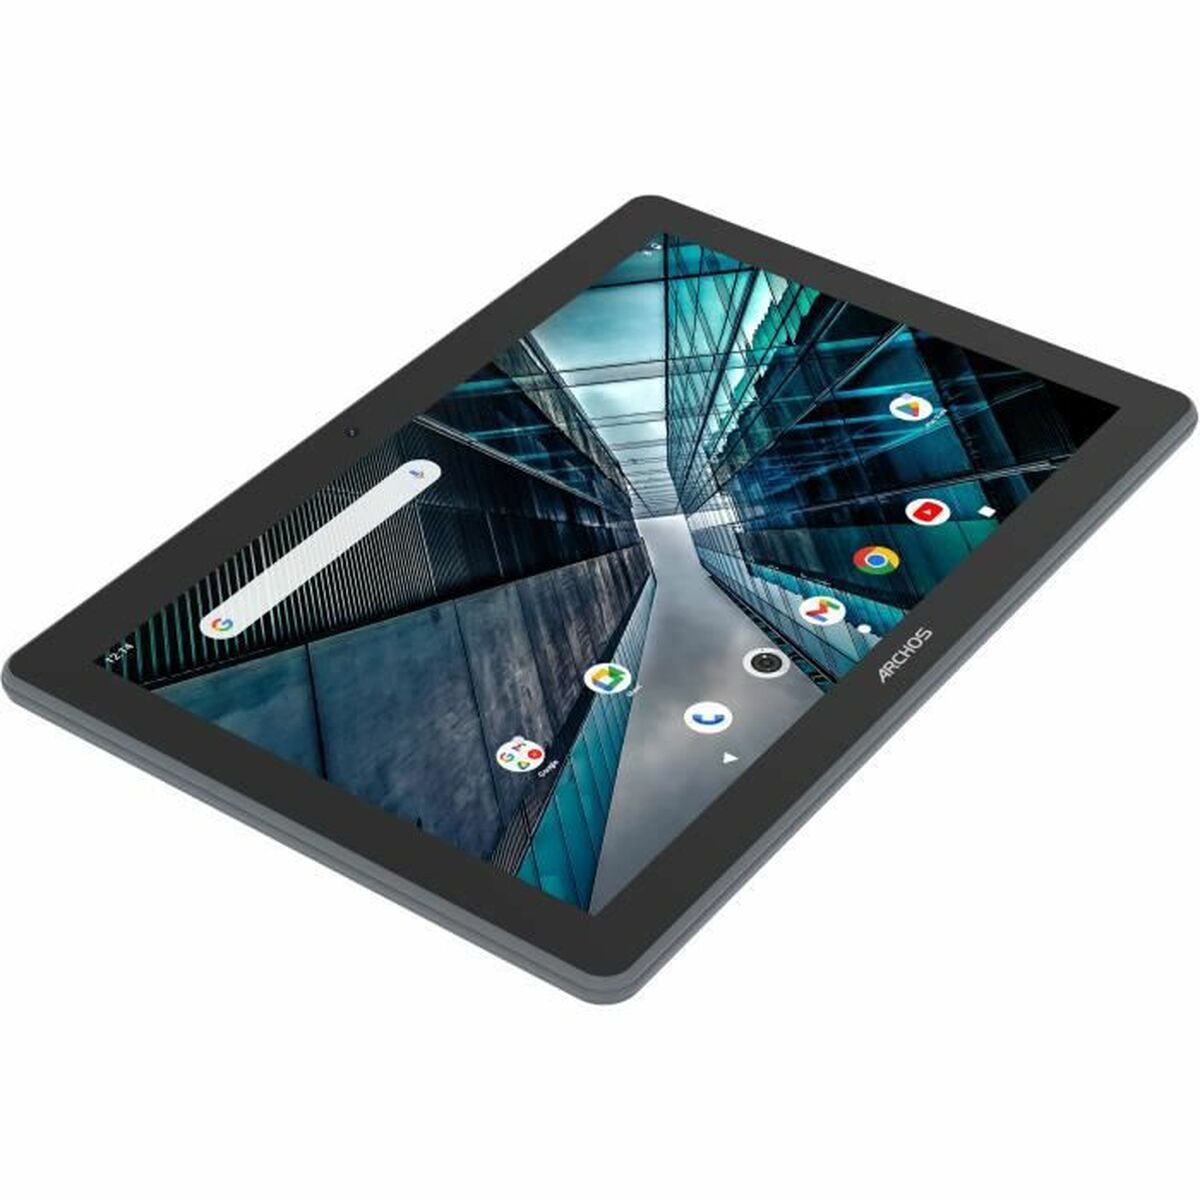 Tablet Archos T101 HD 64 GB 4 GB - CA International  